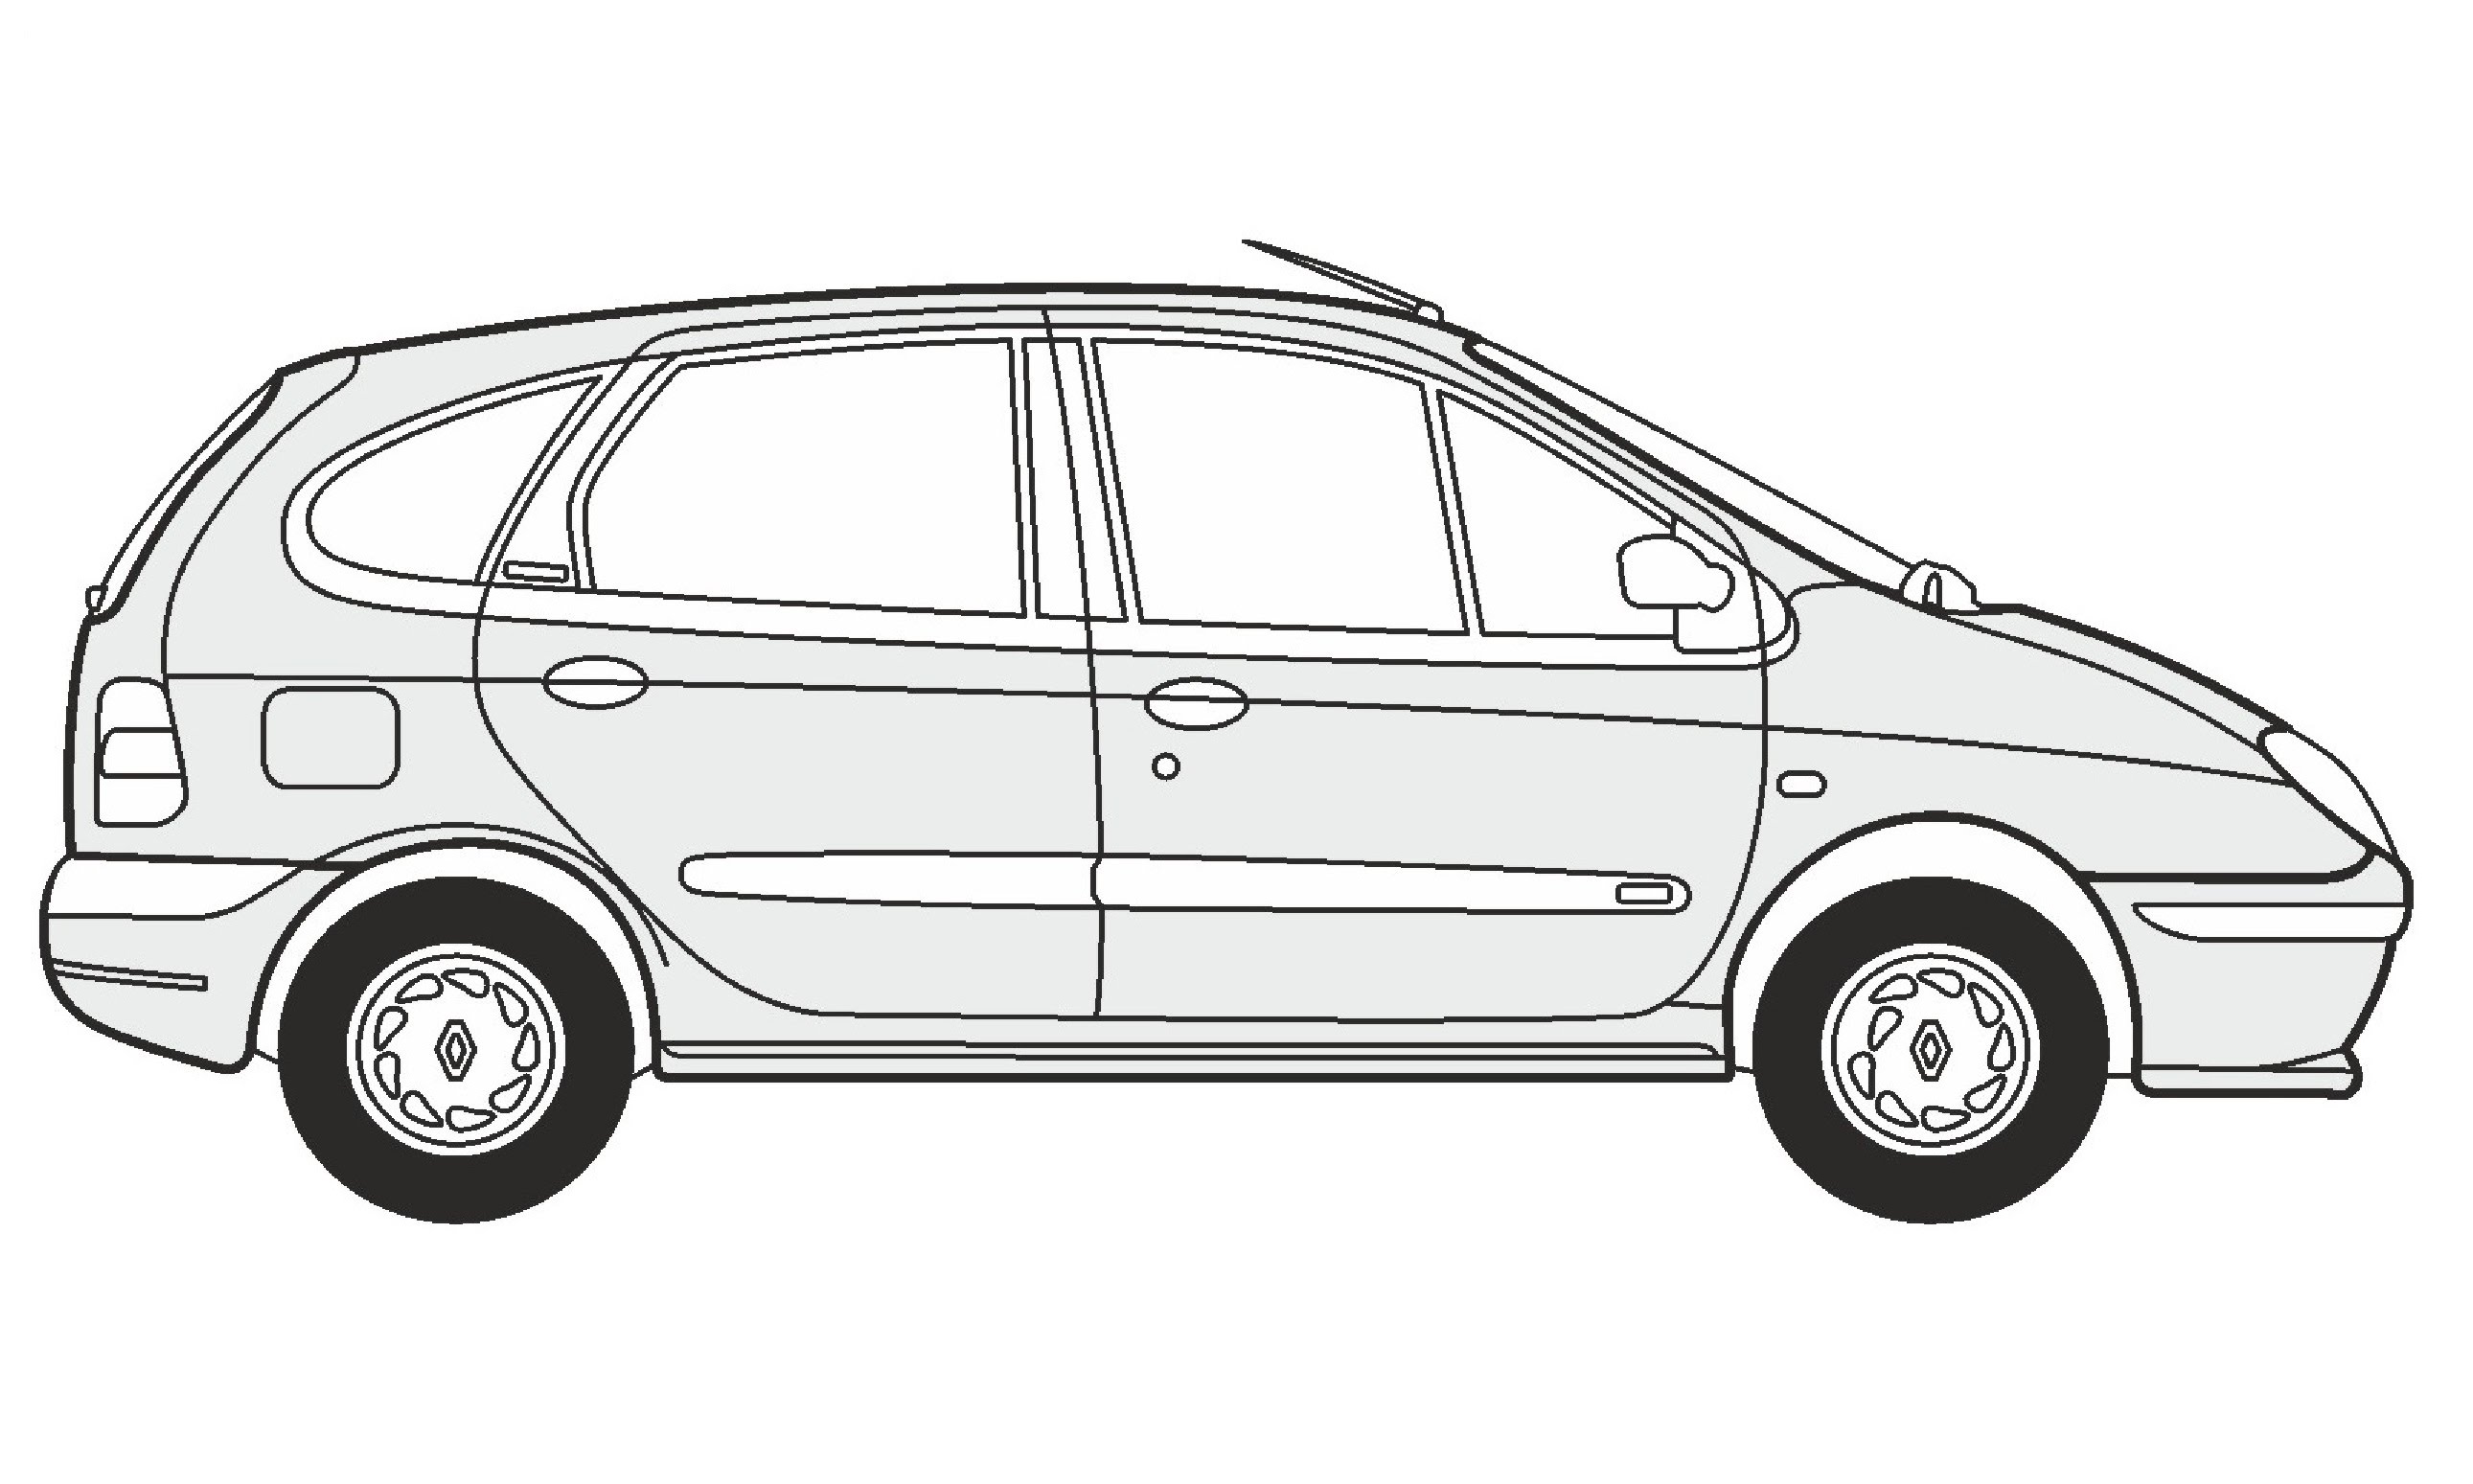 Renault Image Drawing